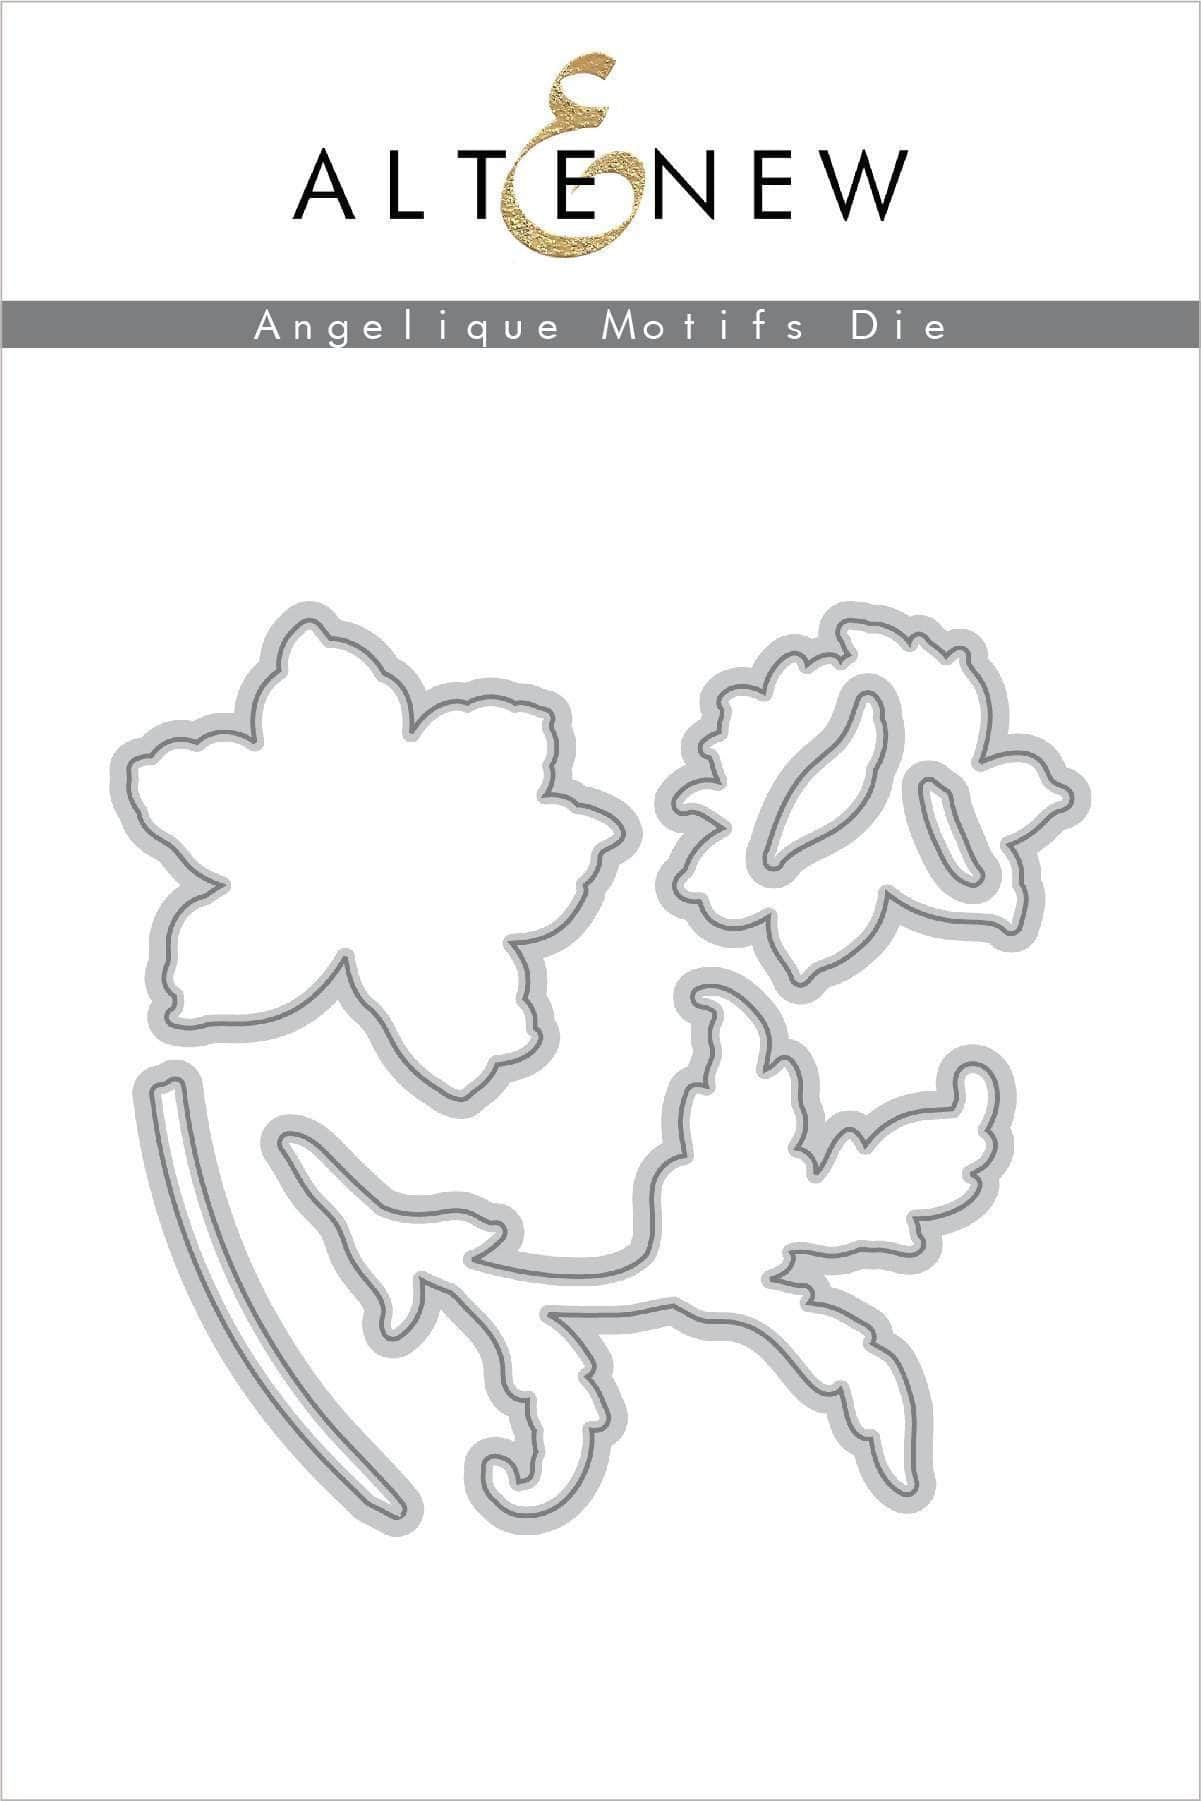 Altenew Stamp & Die & Stencil Bundle Angelique Motifs